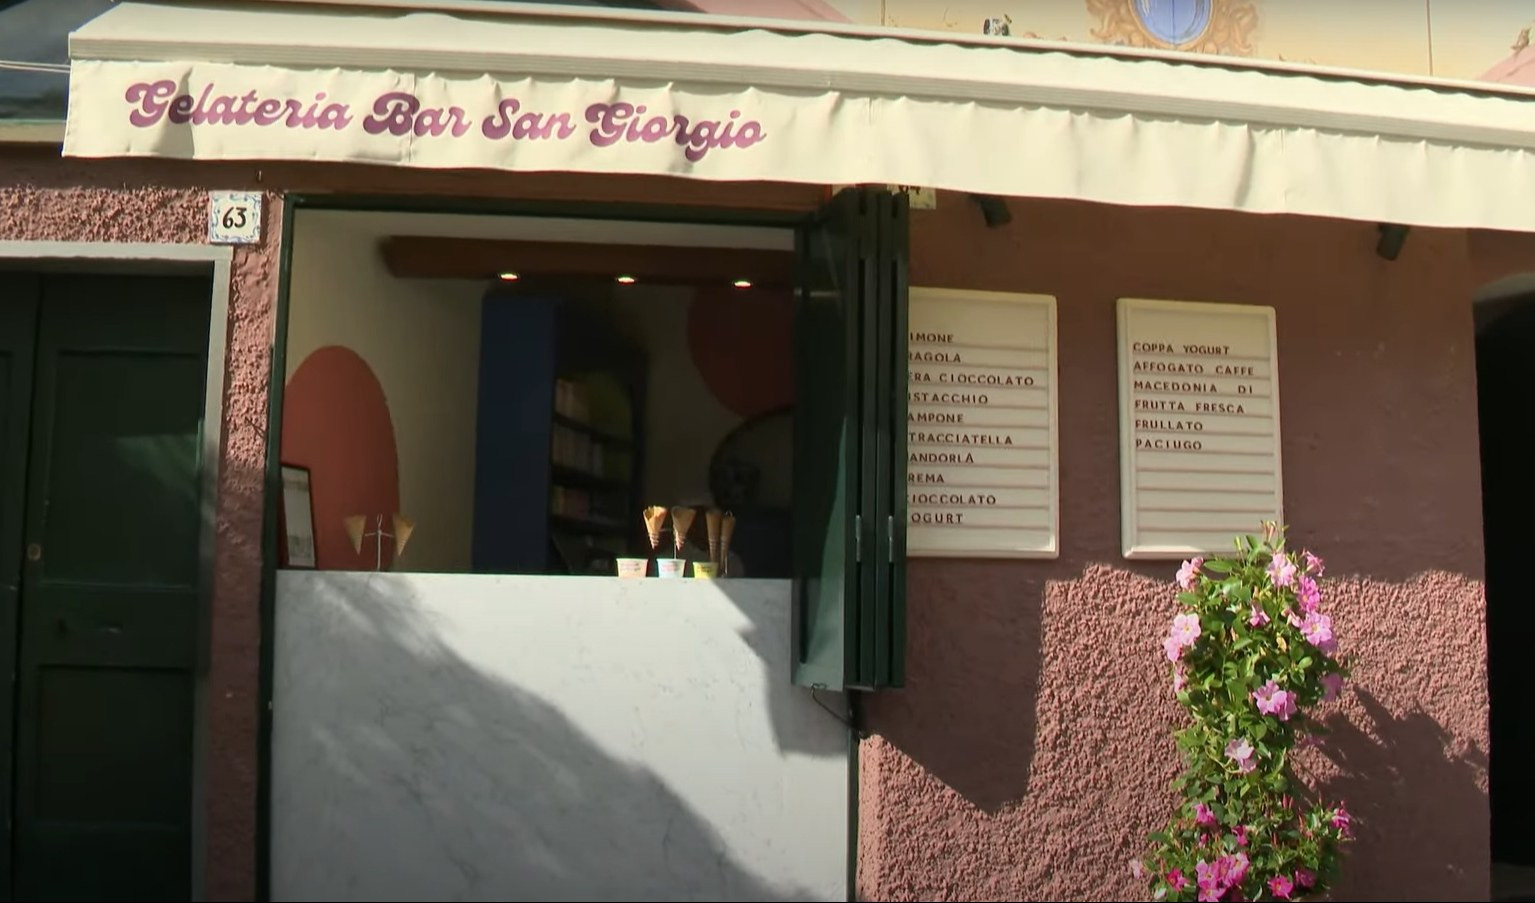 La gelateria San Giorgio di Portofino compie 100 anni: qui nacque il 